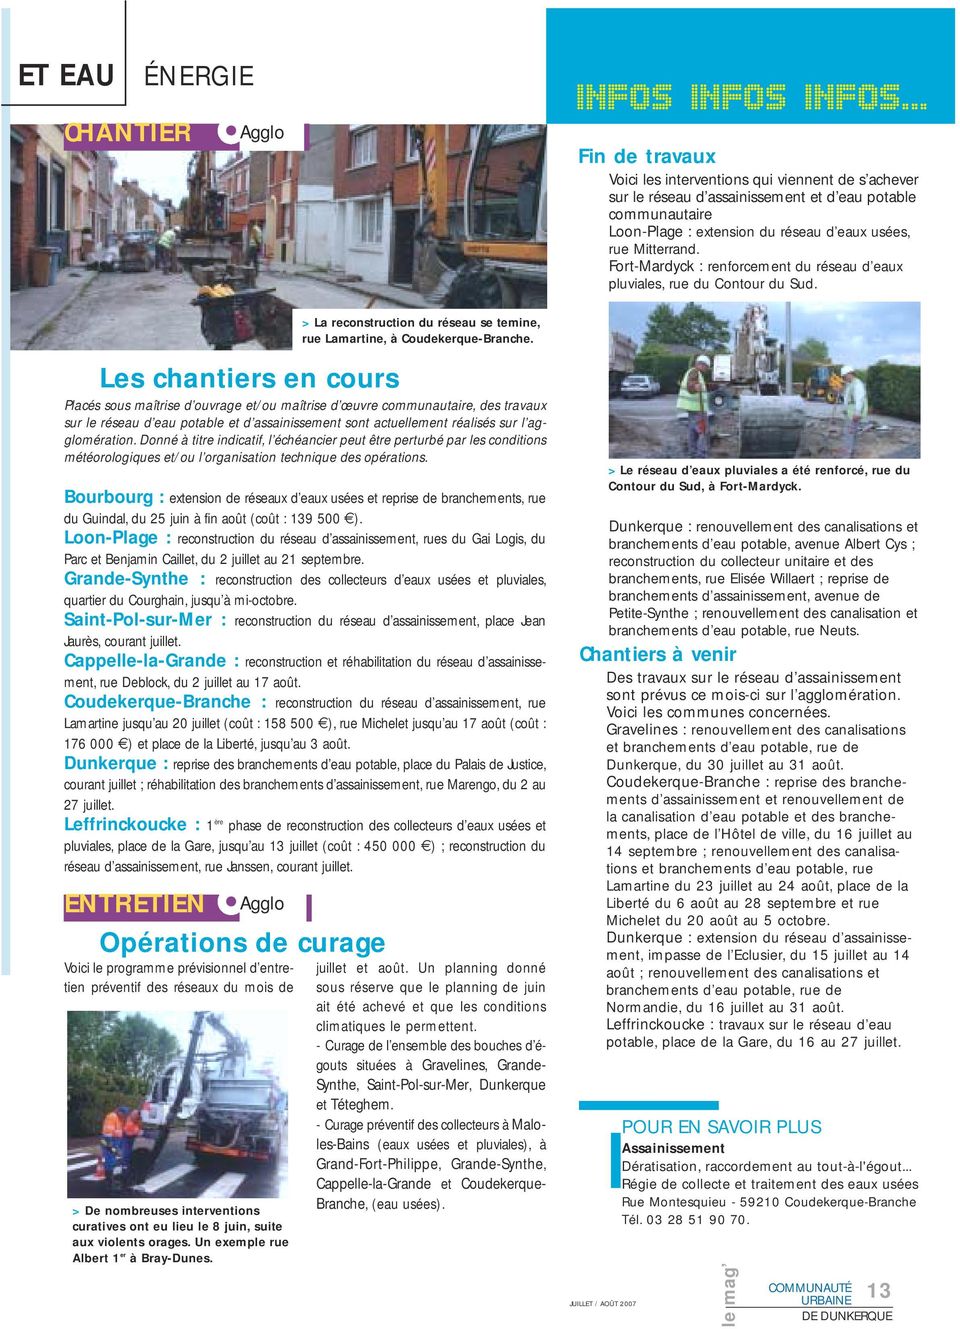 Bourbourg : extension de réseaux d eaux usées et reprise de branchements, rue du Guindal, du 25 juin à fin août (coût : 139 500 ).